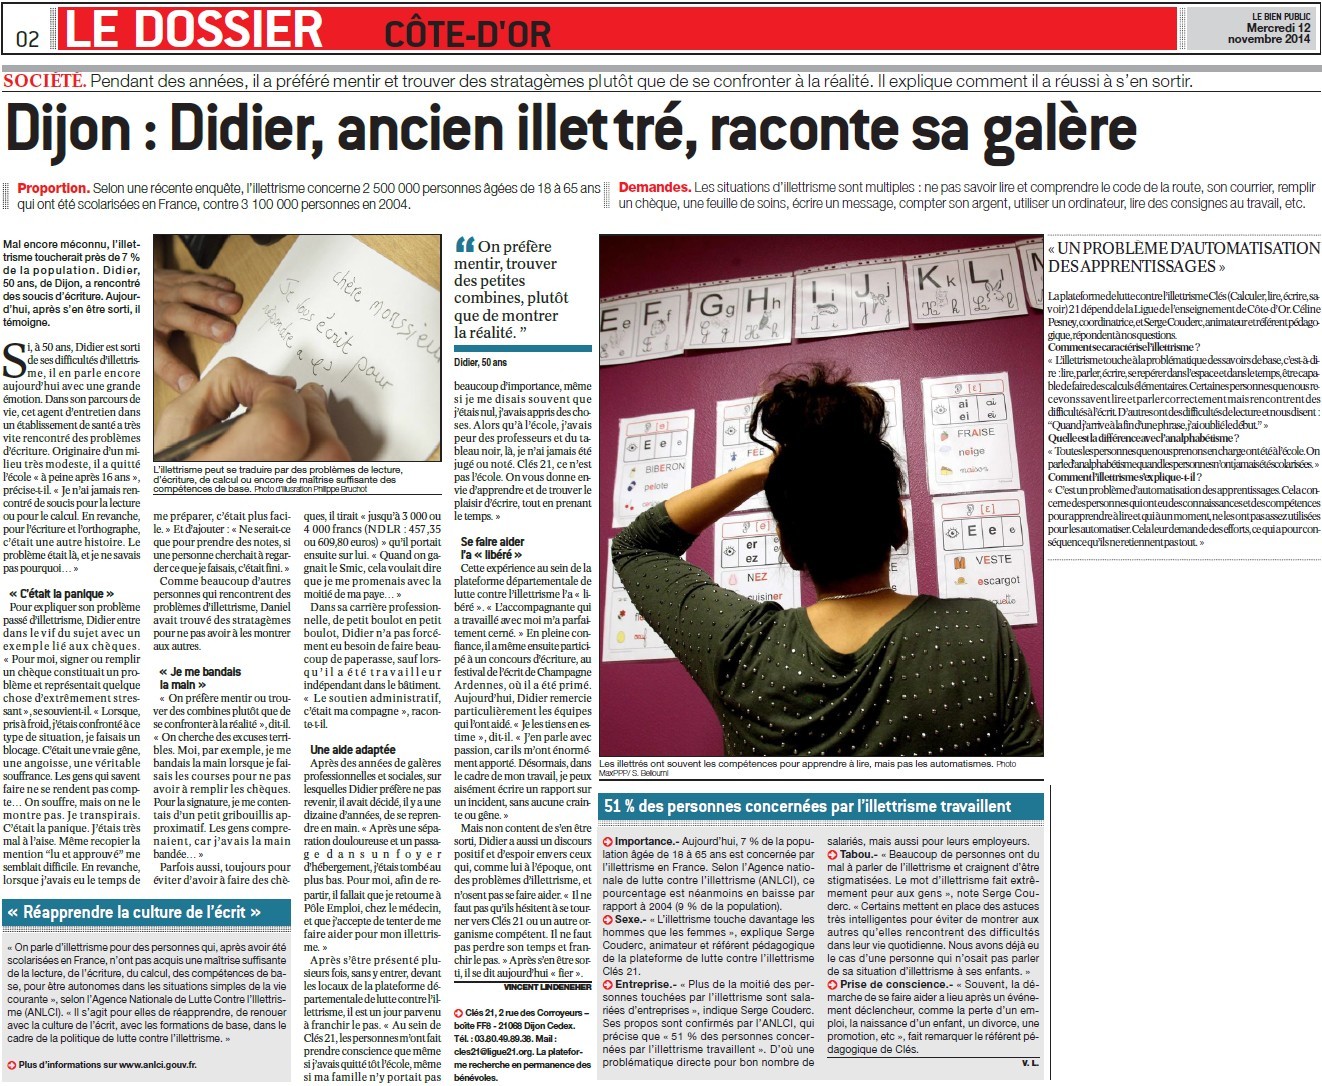 Dijon, Didier ancien illettré